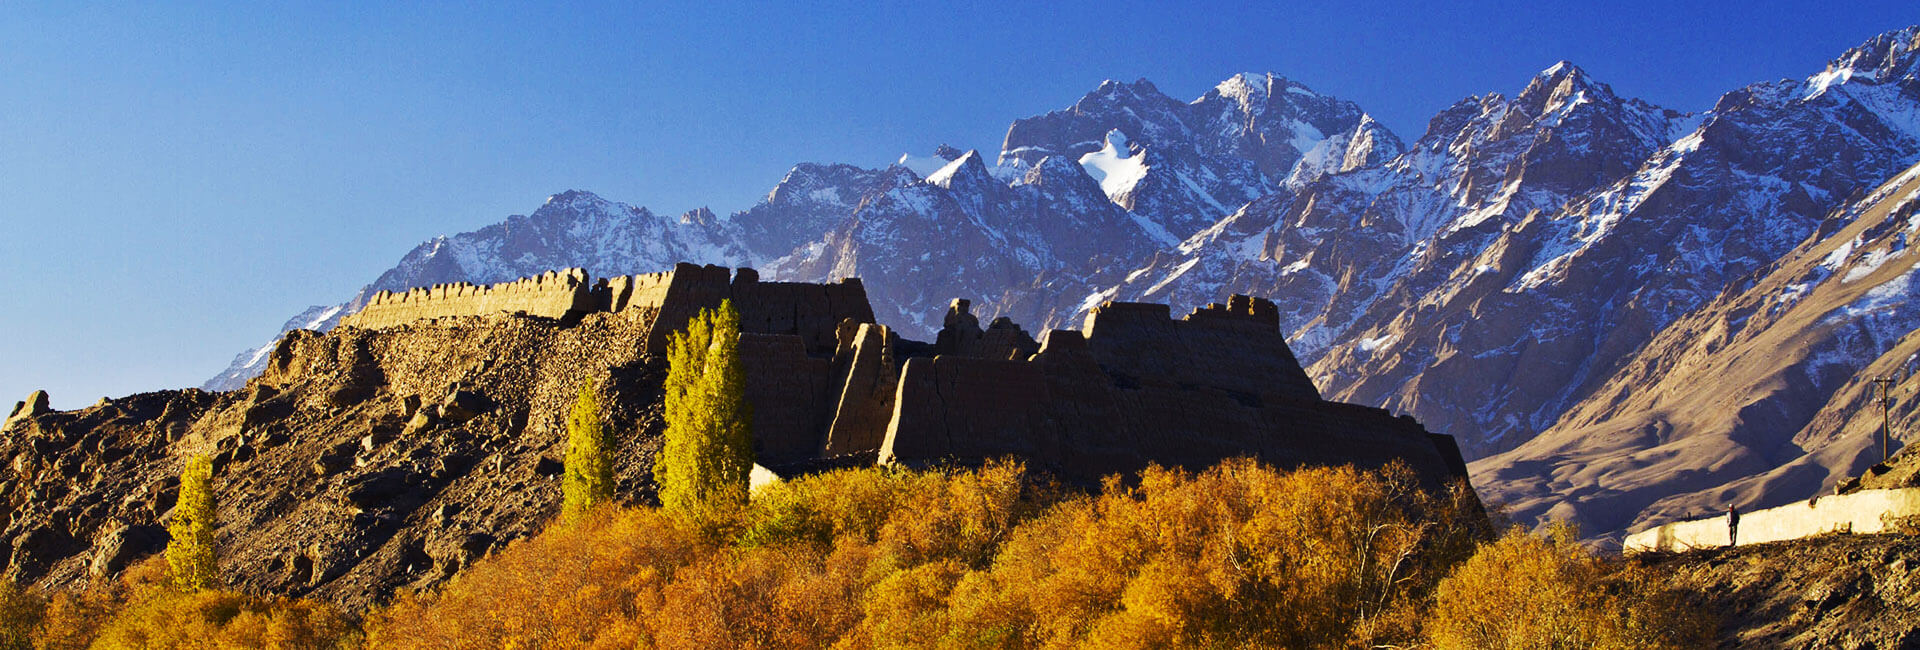 8 Days Classic Xinjiang Tour 2022/2023